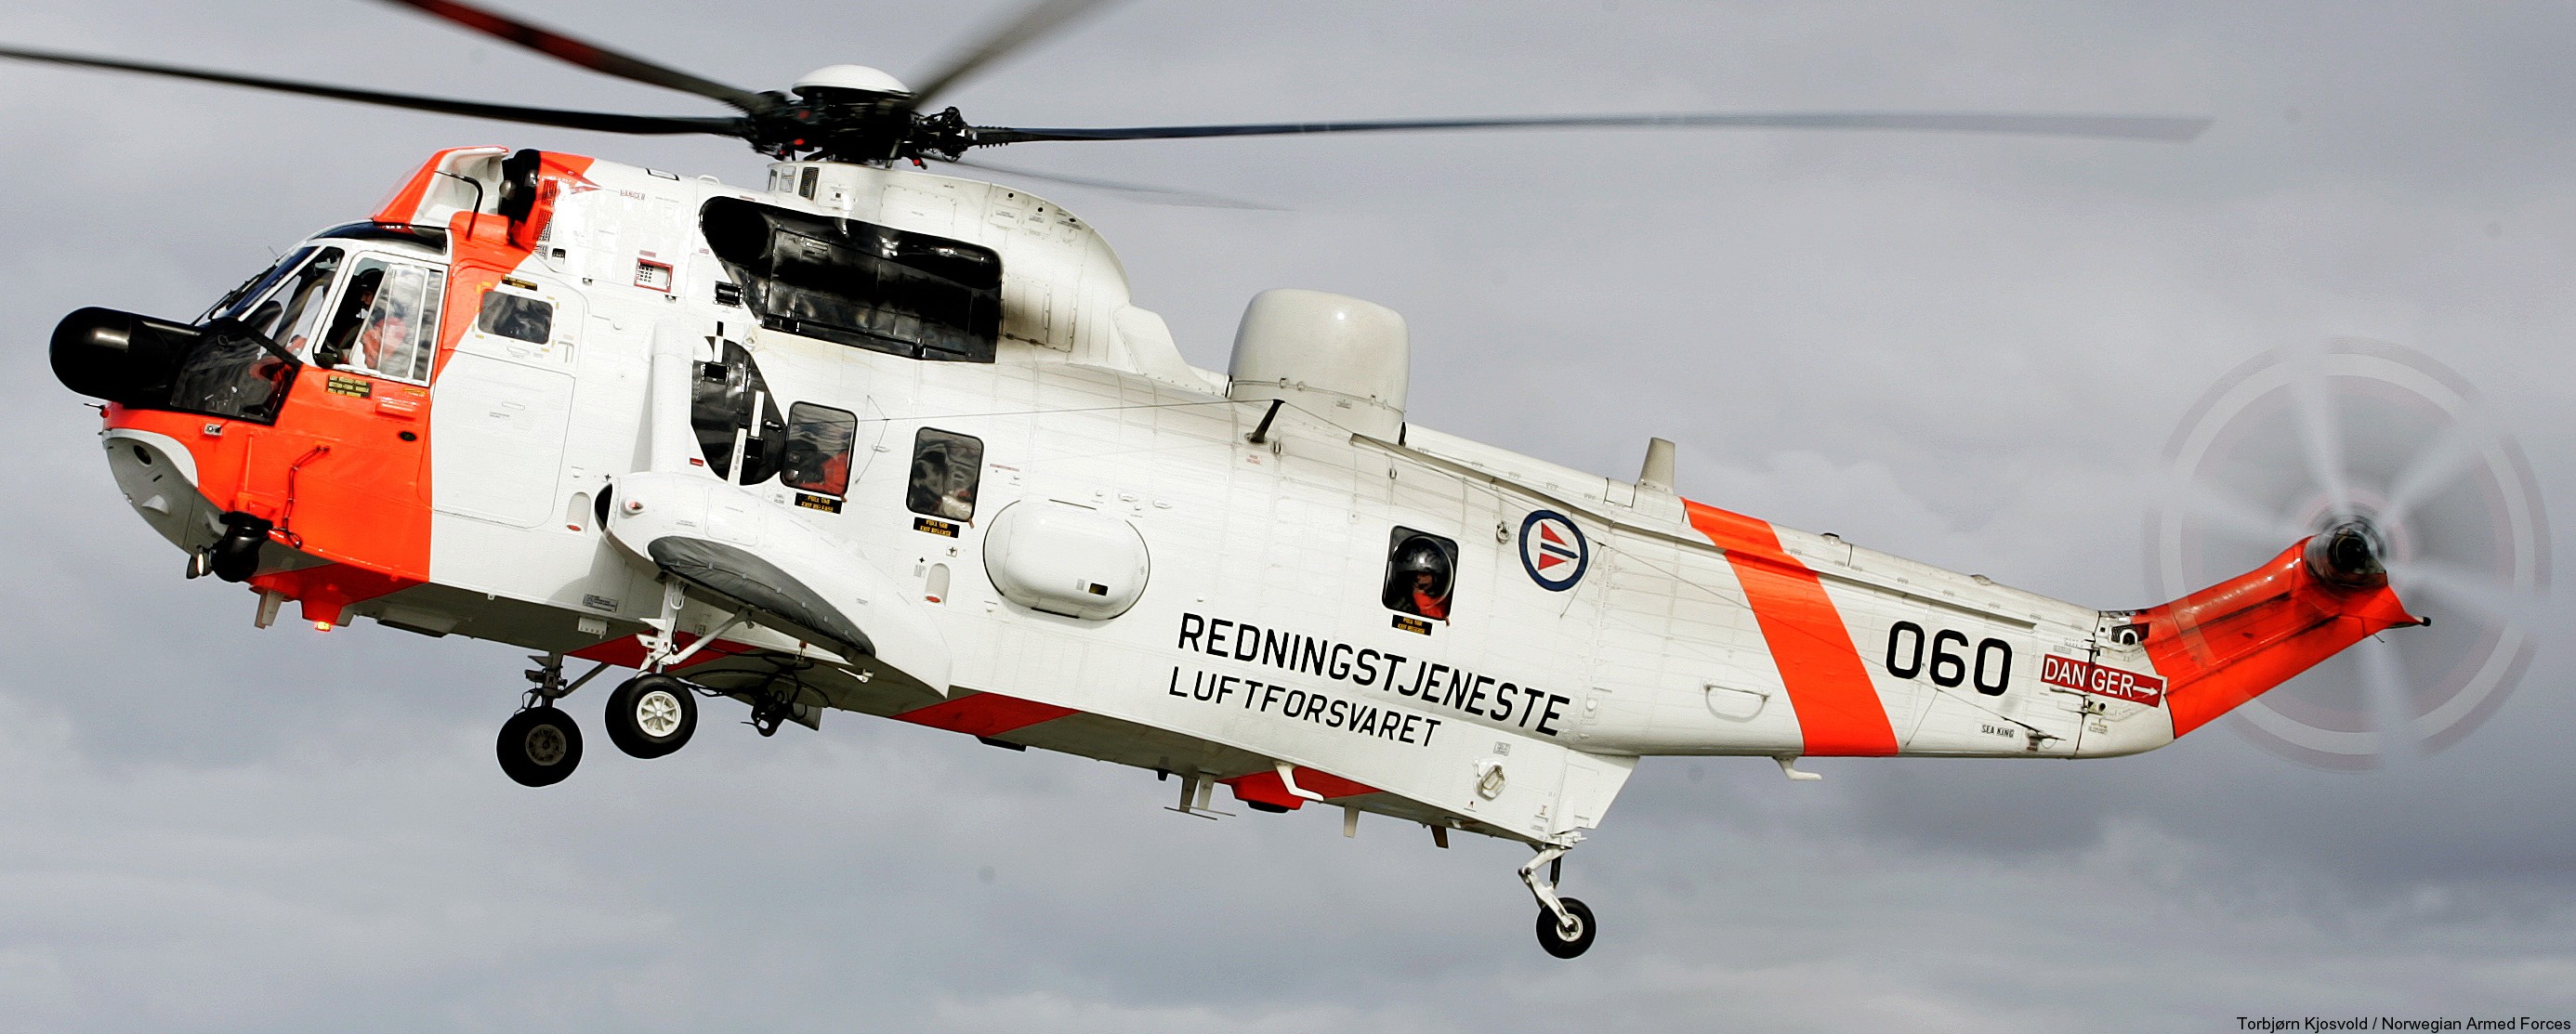 westland ws-61 sea king royal norwegian air force sar rescue 330 squadron skvadron luftforsvaret 060 03